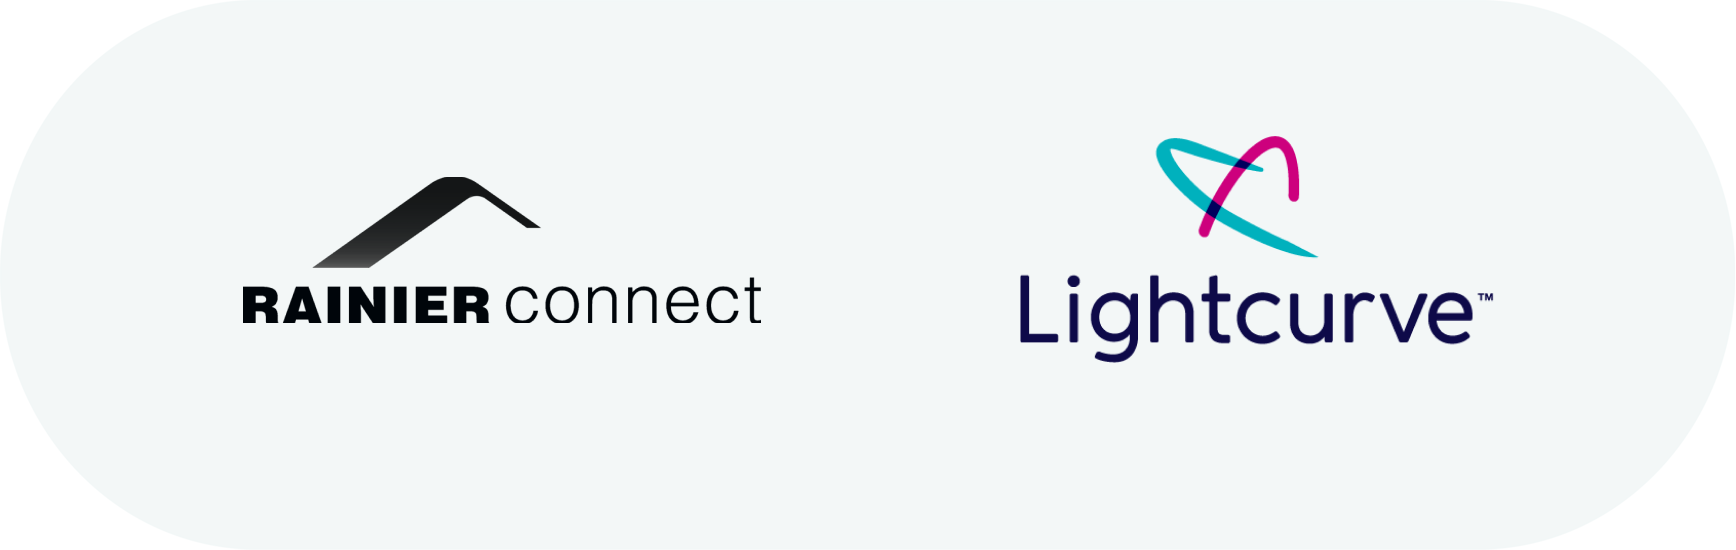 Rainier Connect is now Lightcurve™